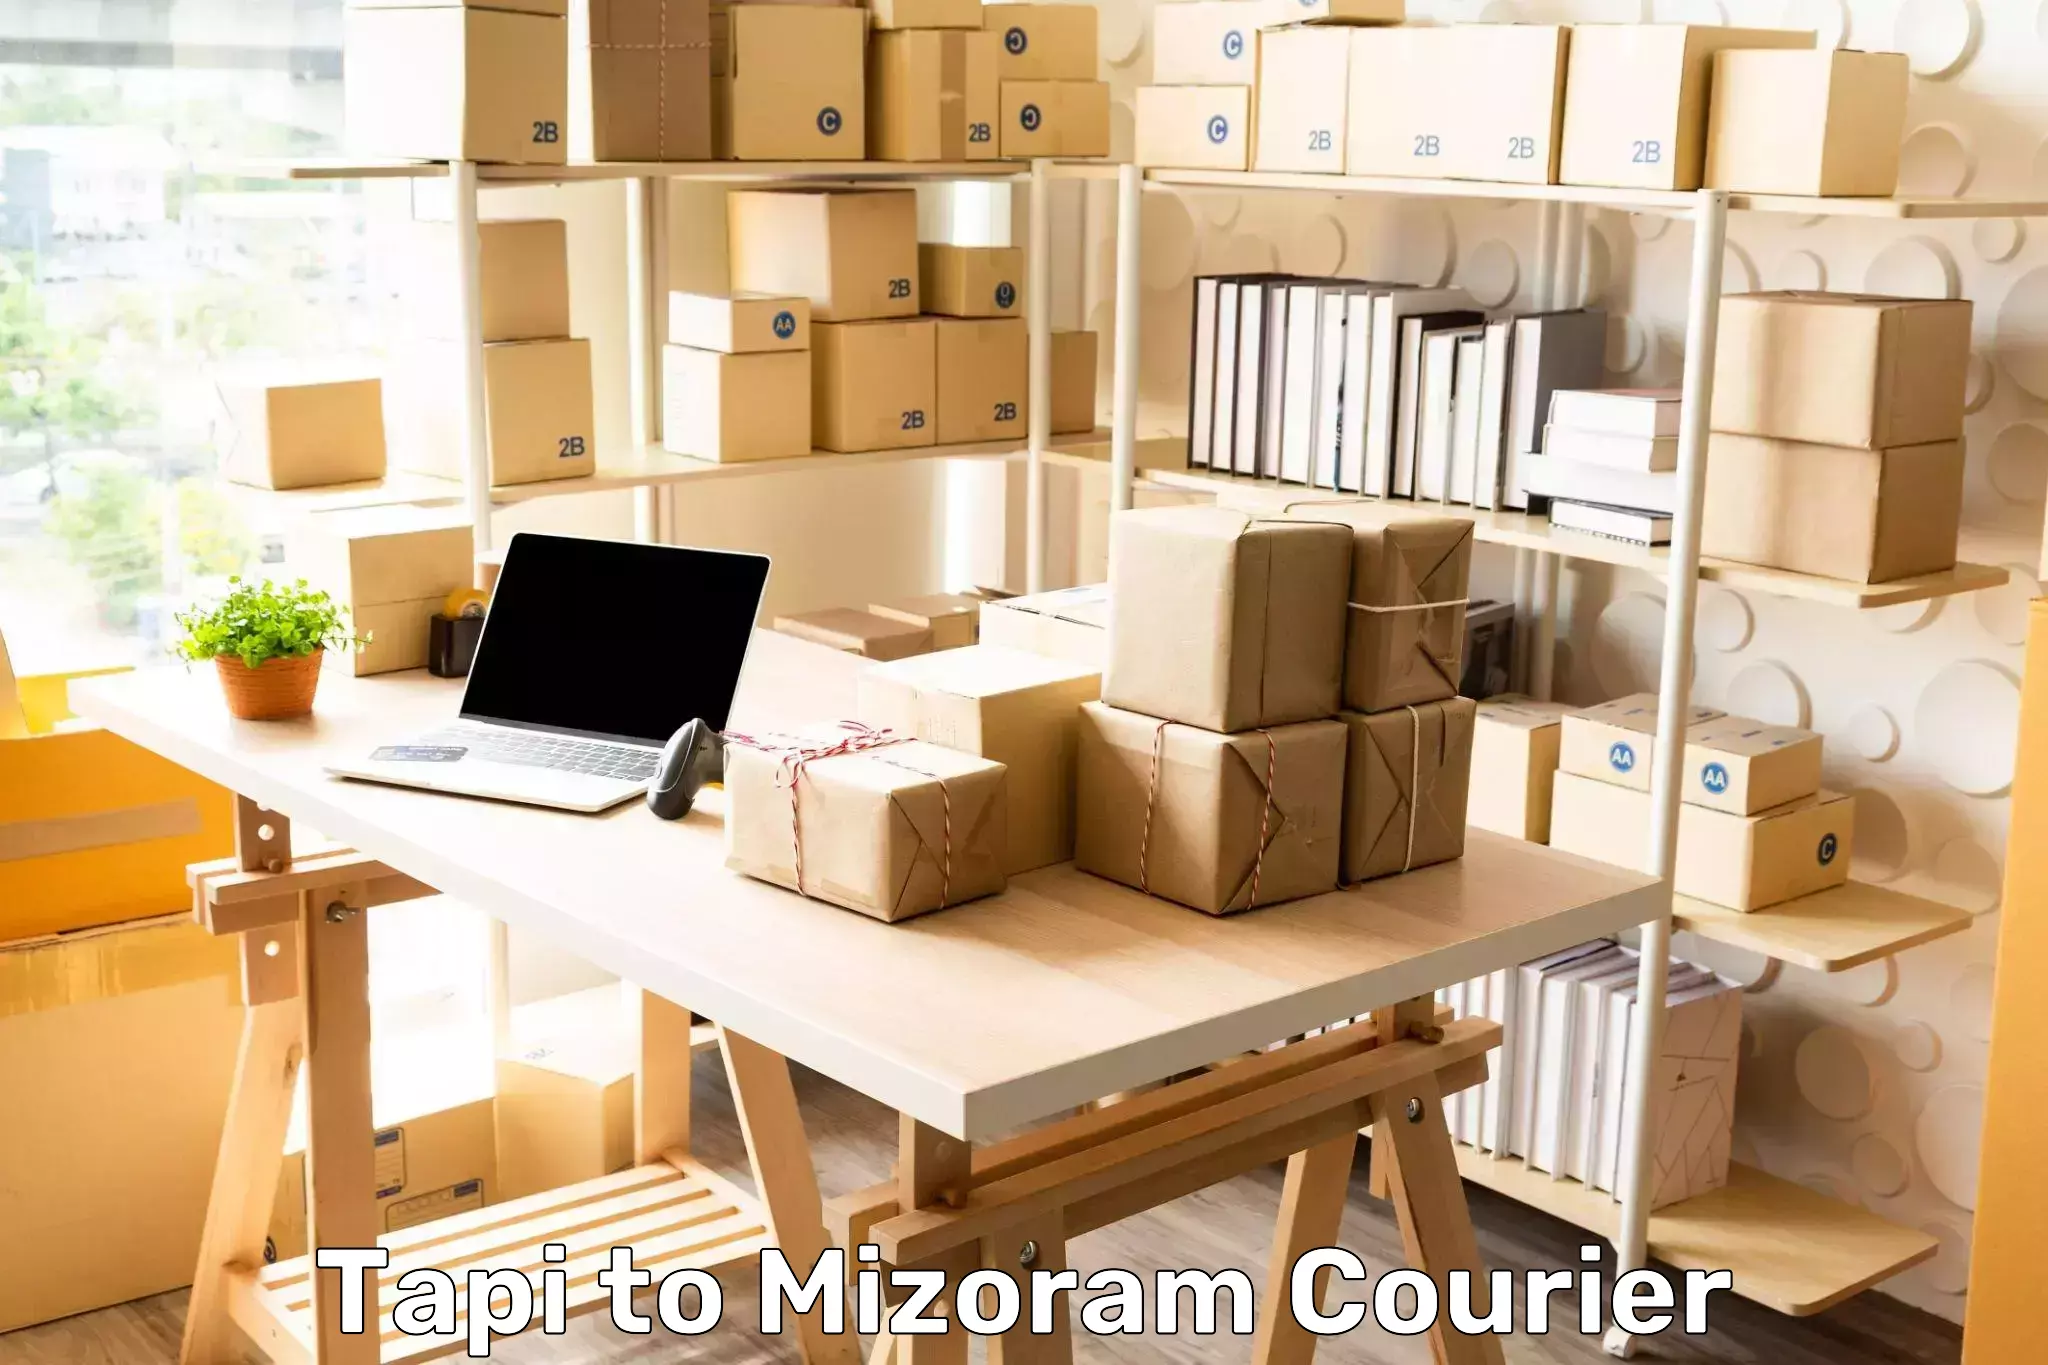 Advanced courier platforms Tapi to Mizoram